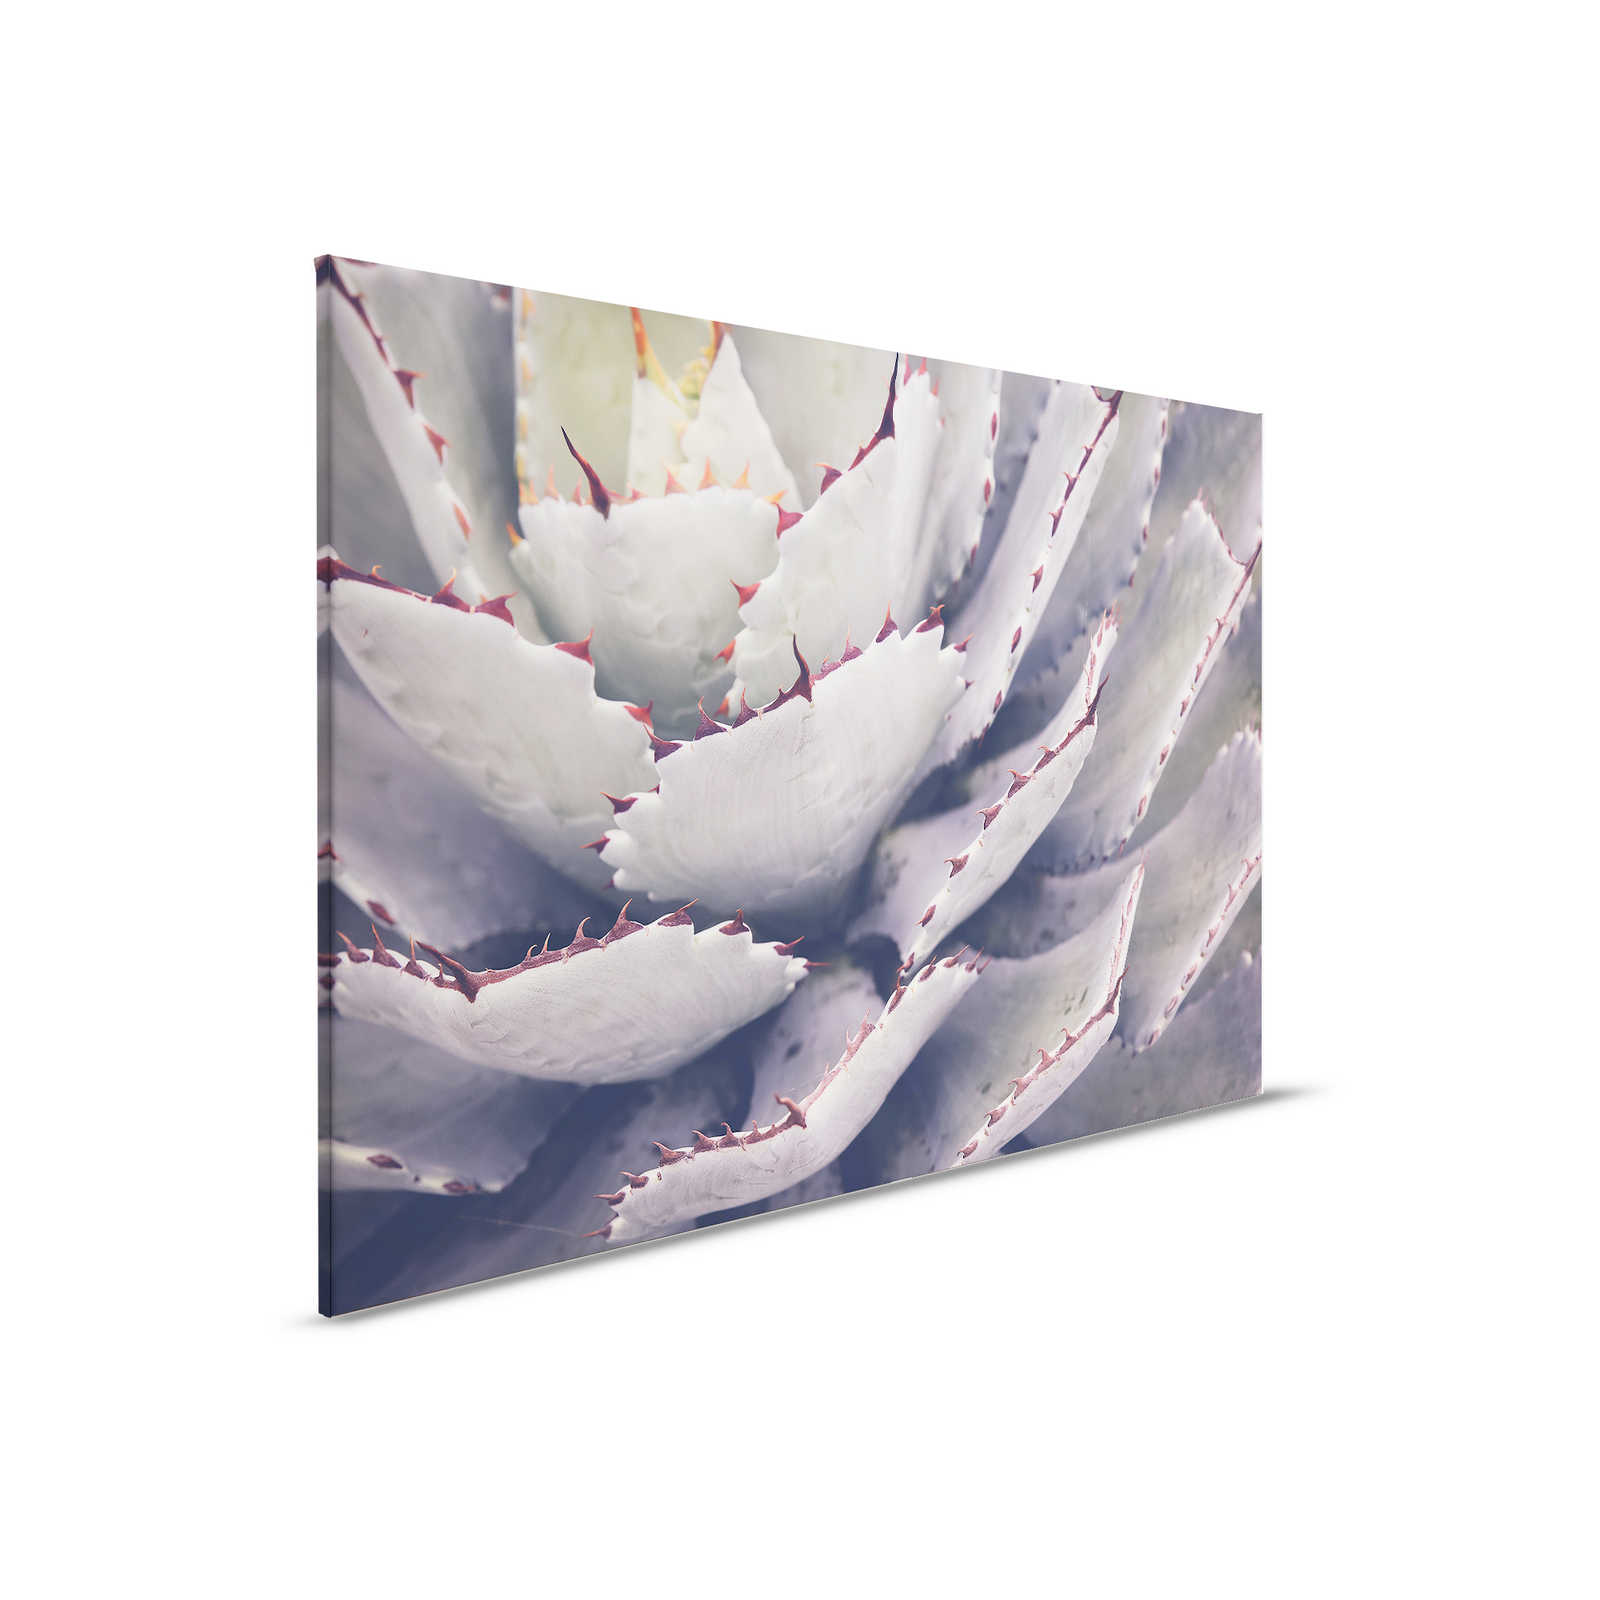 Cuadro en lienzo con primer plano de un cactus - 0,90 m x 0,60 m
